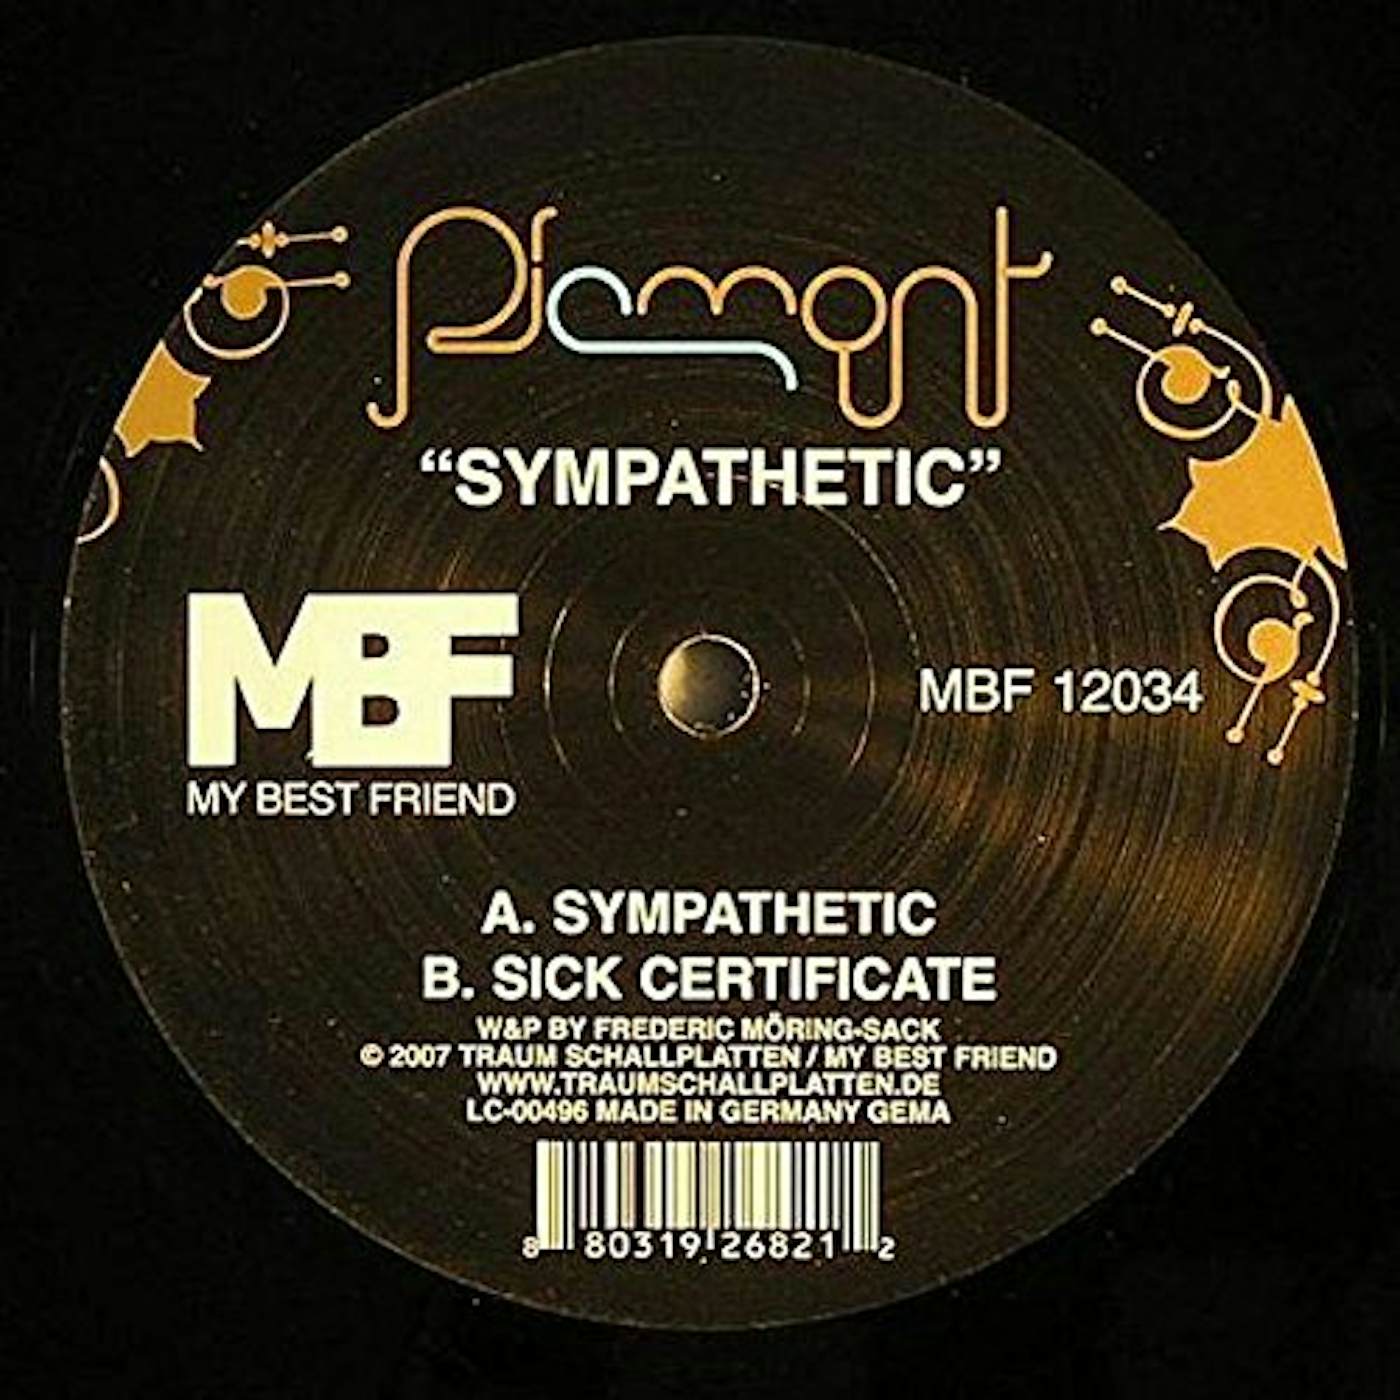 Piemont Sympathetic Vinyl Record